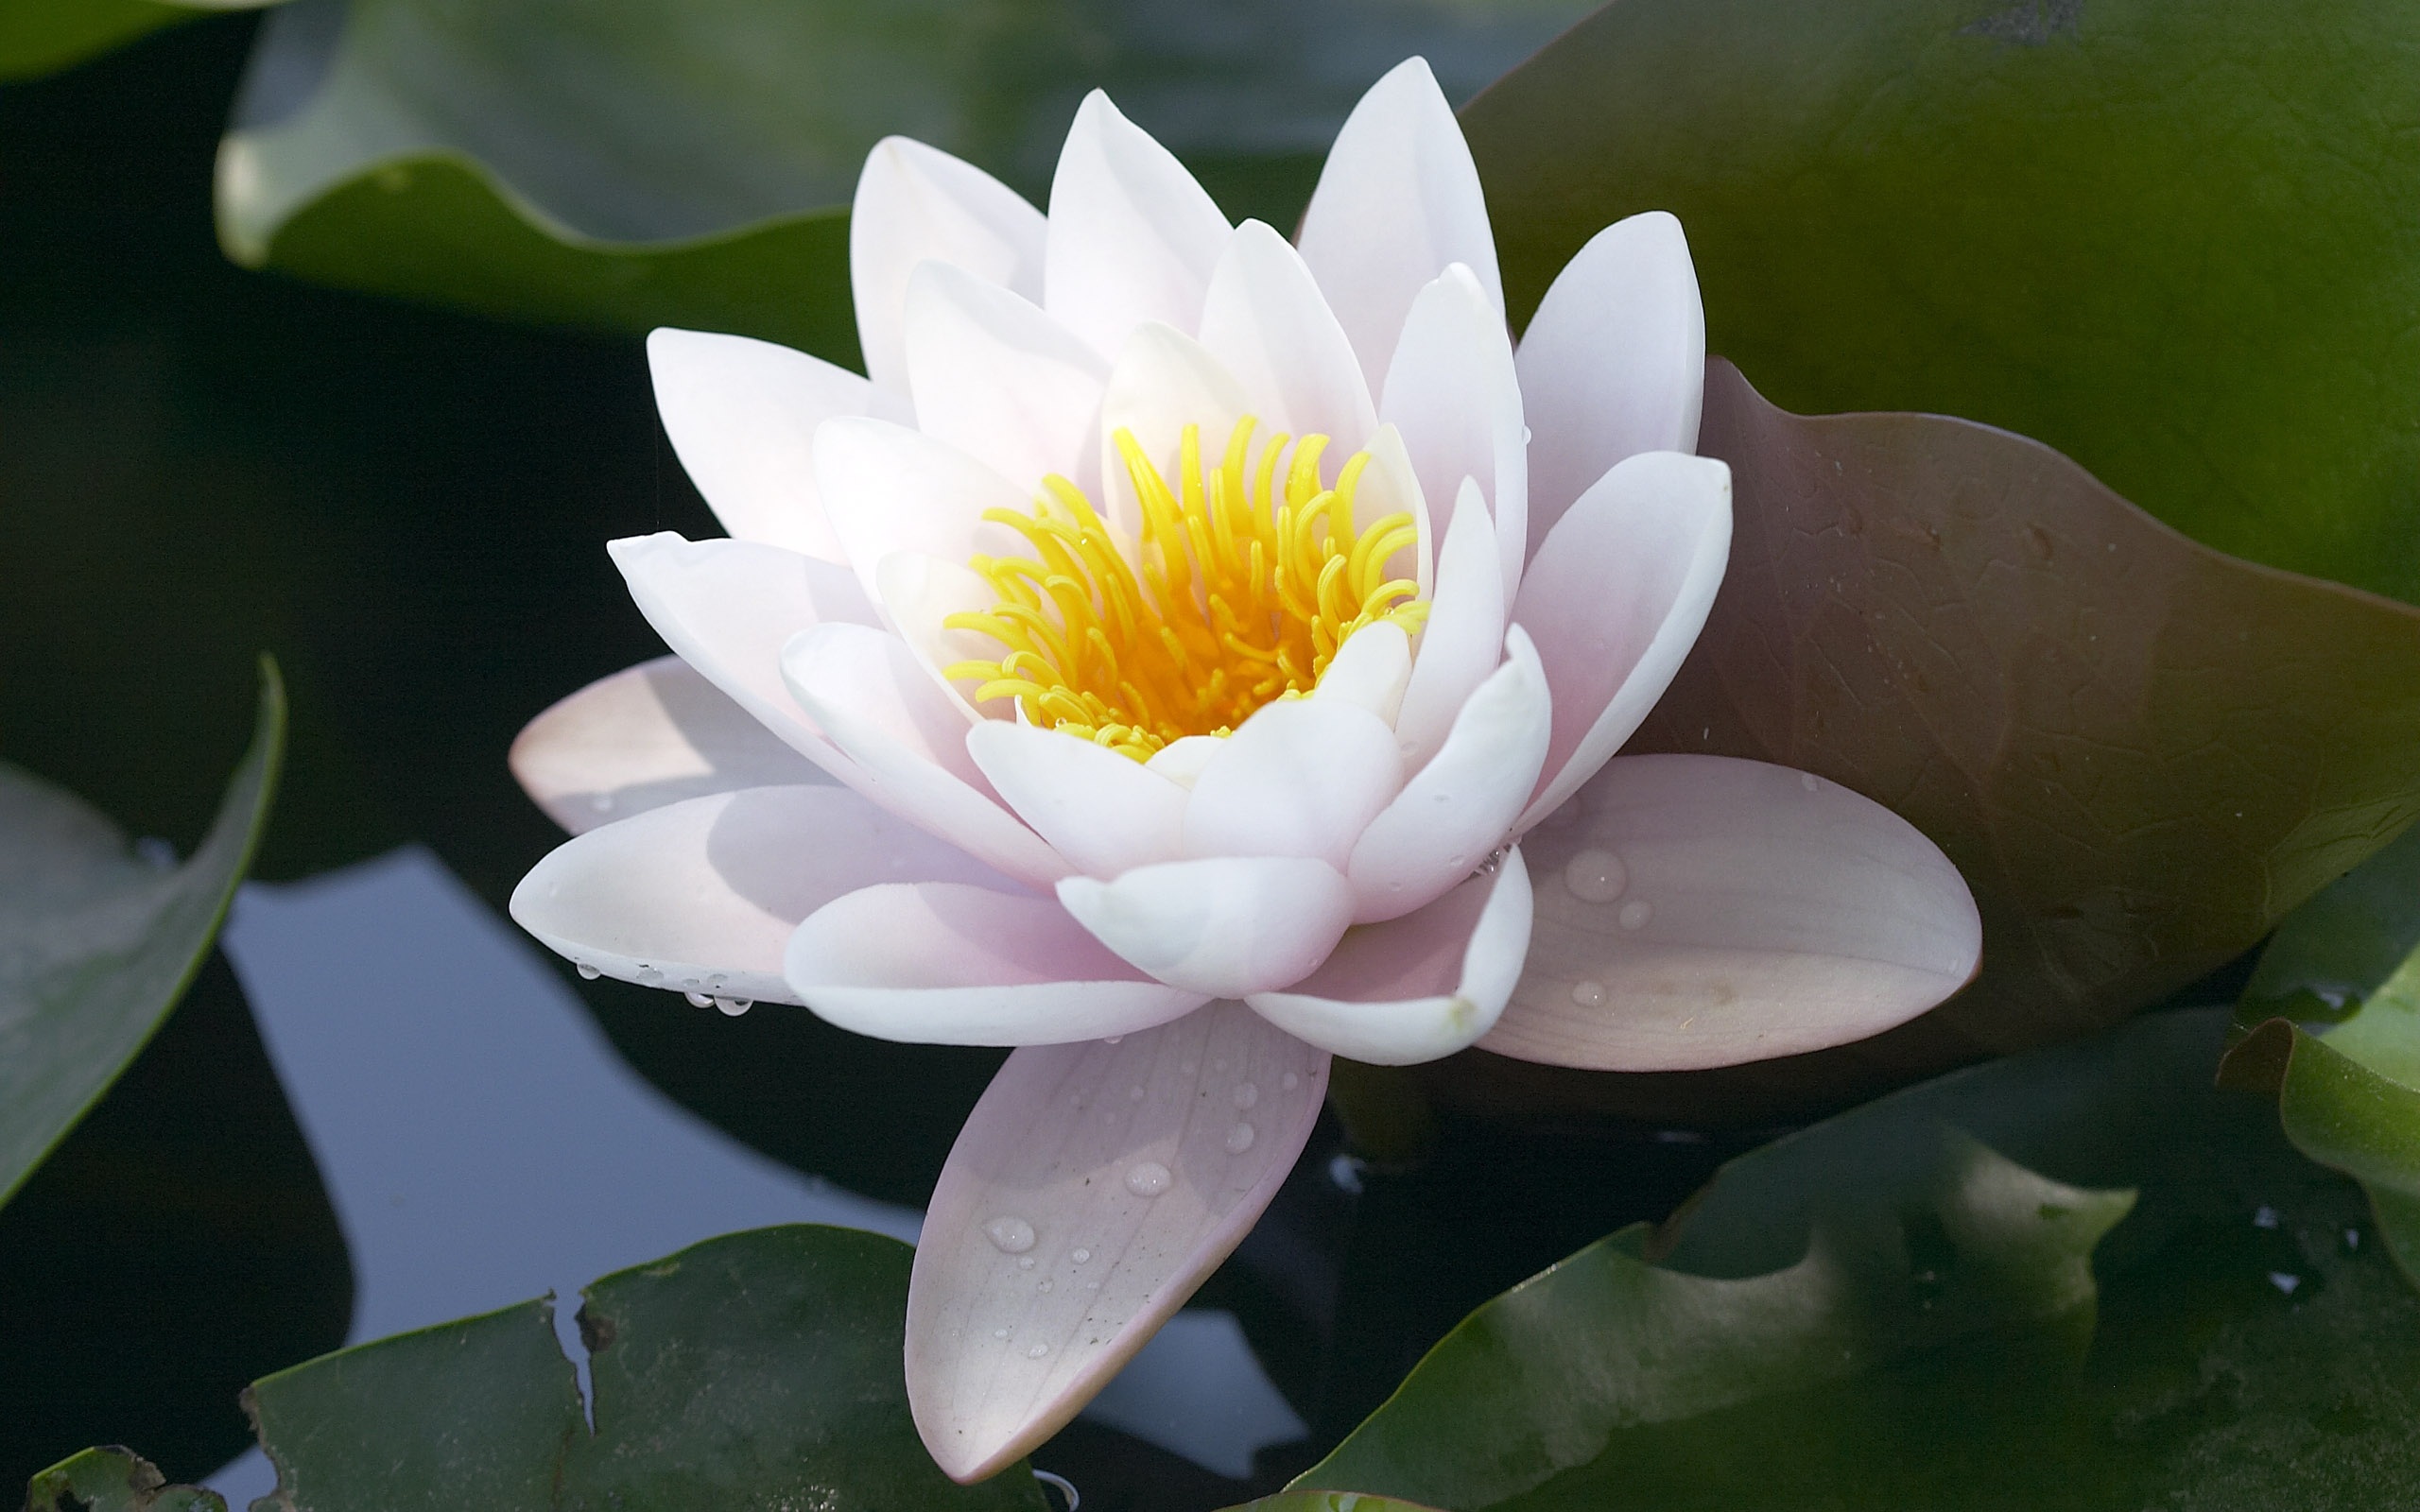 O budismo e a flor de lótus